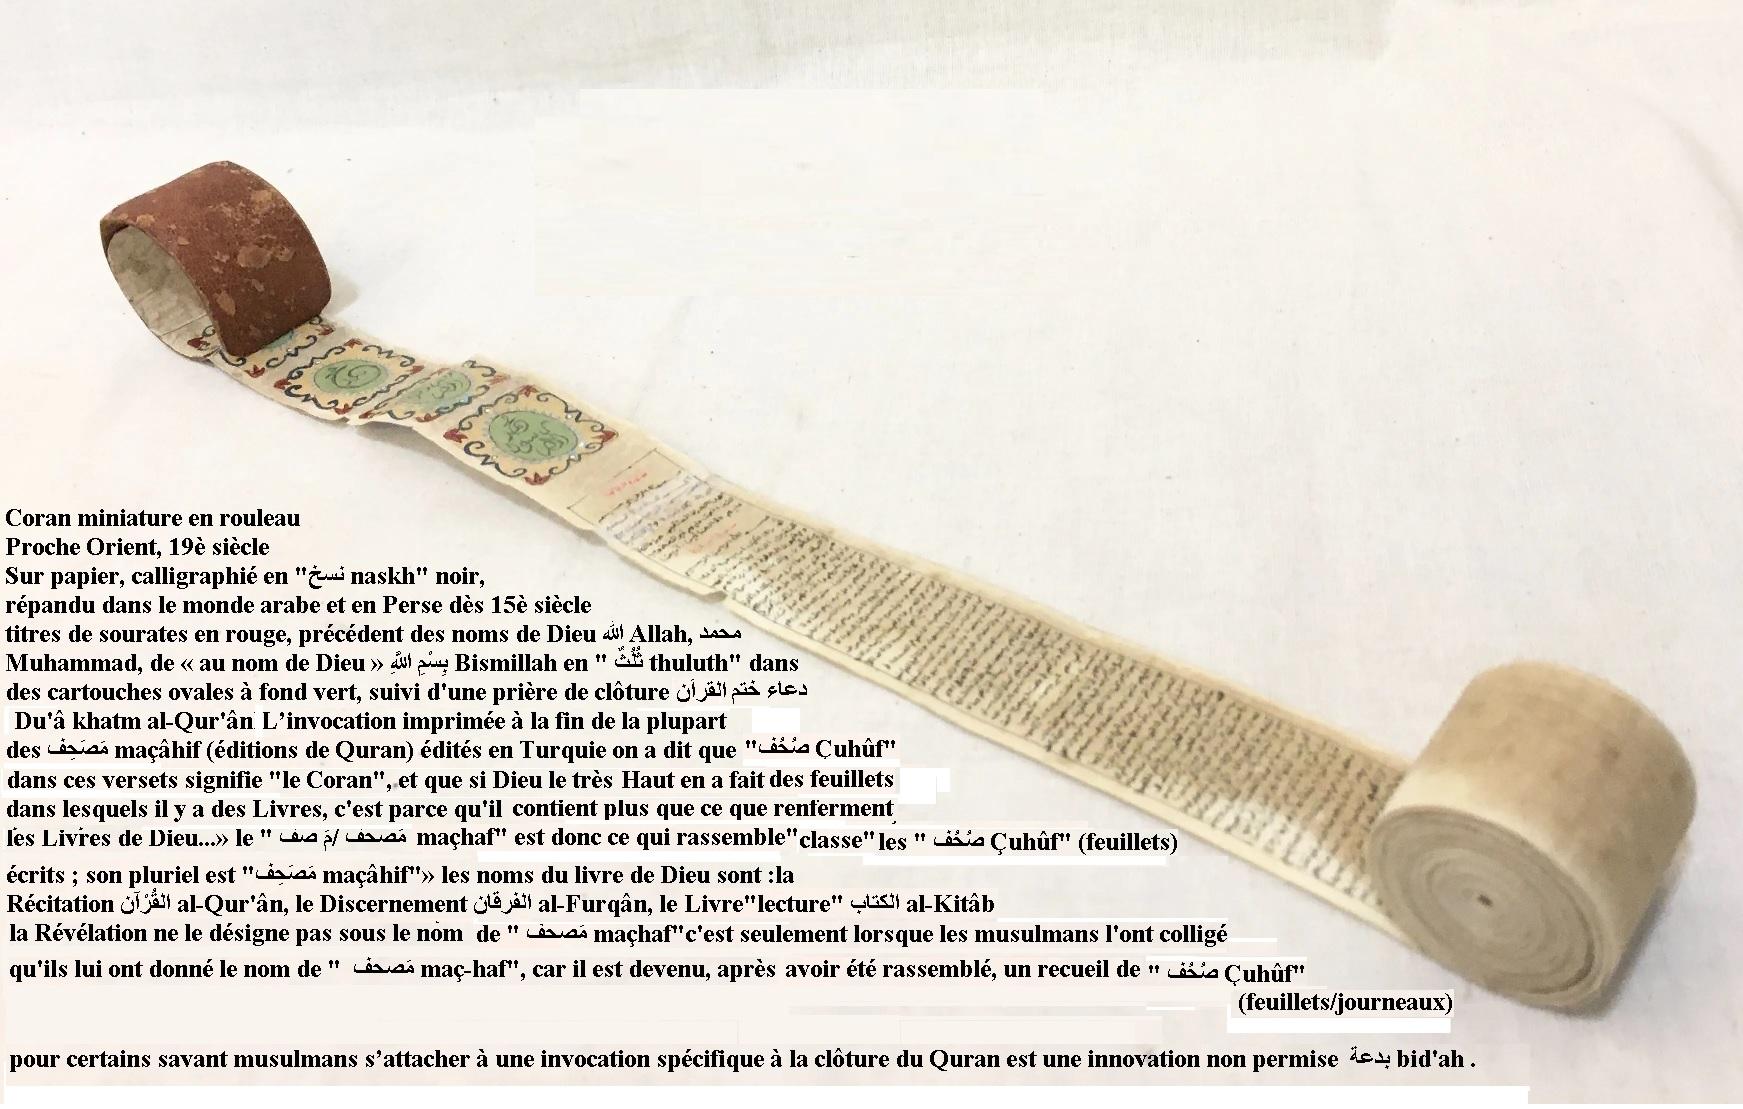 Coran miniature rouleau priere de cloture du a khatm al qur an